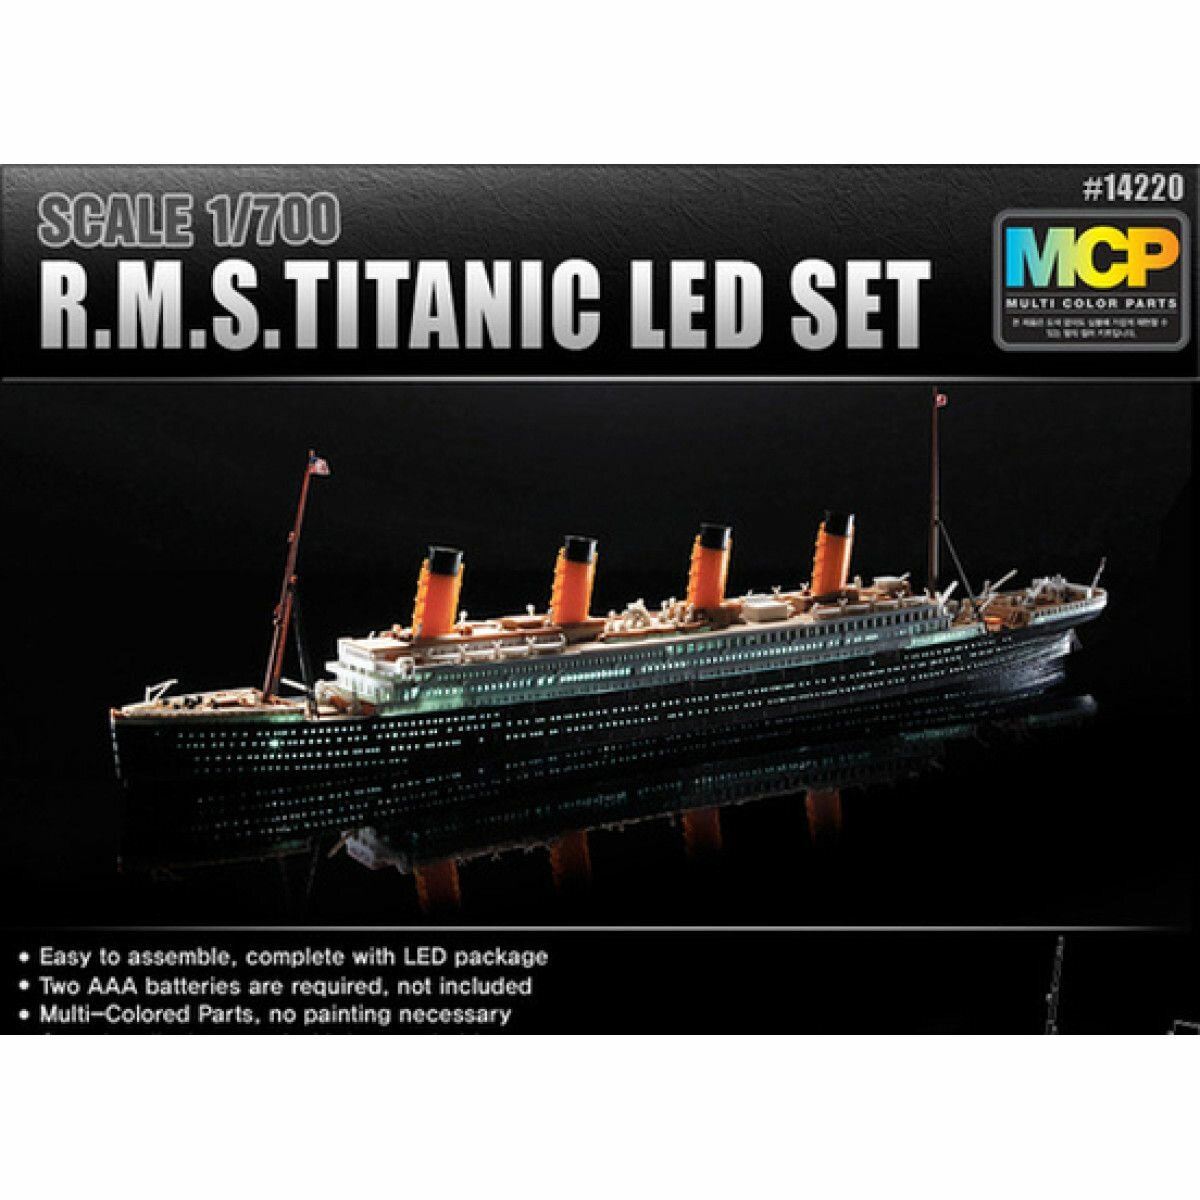 Academy сборная модель 14220 R.M.S. Titanic + LED SET 1:700